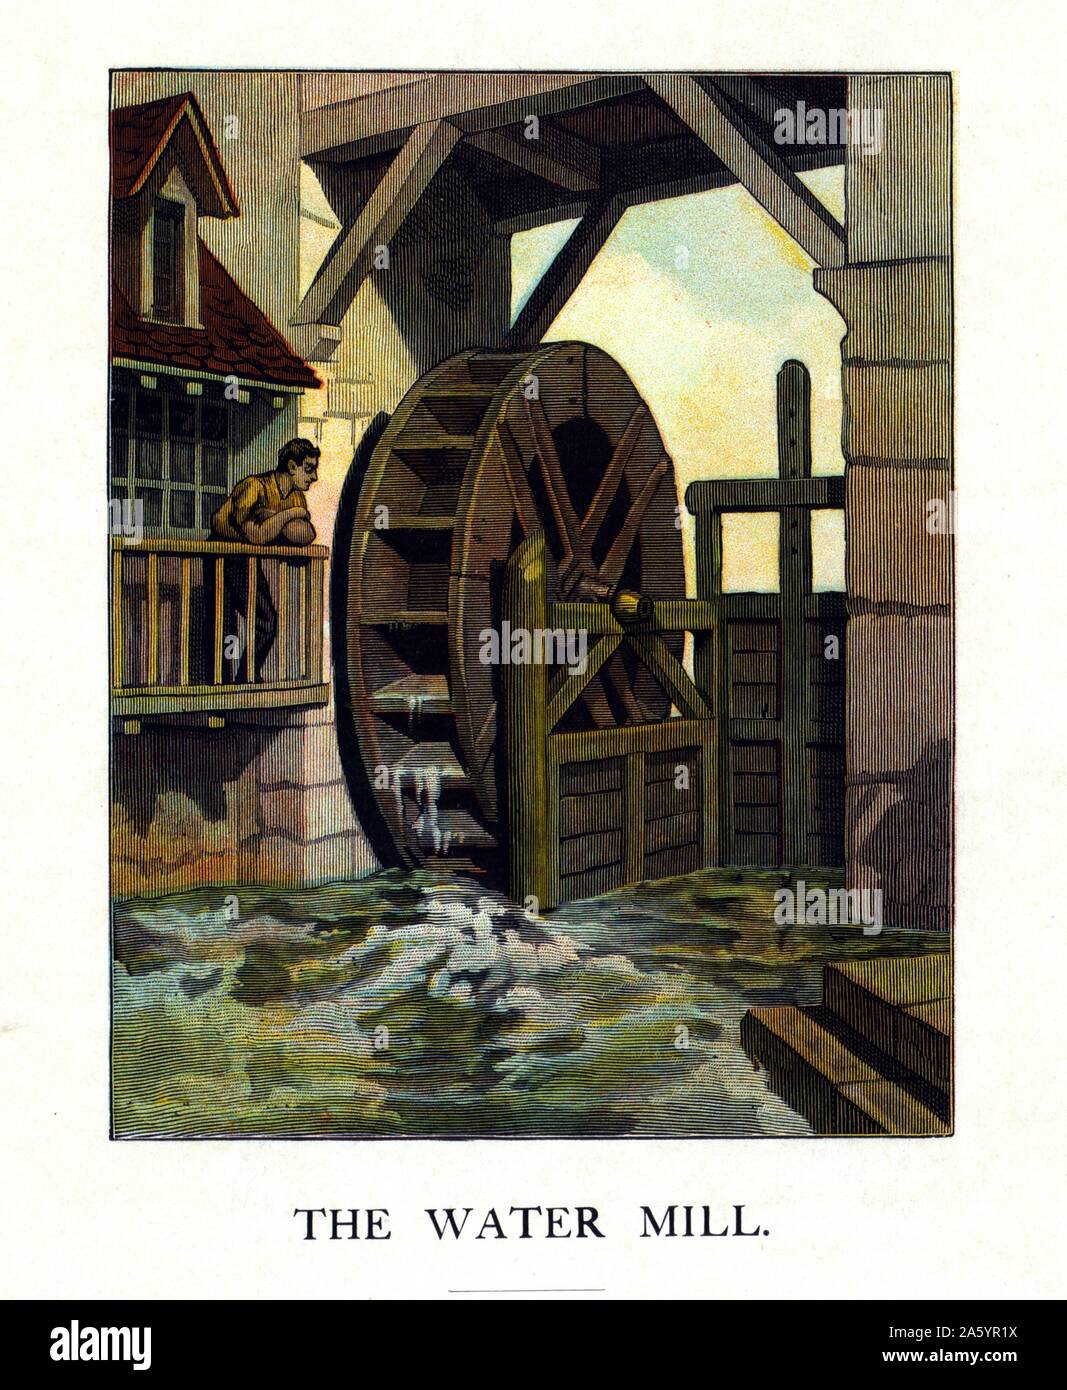 Ein American Illustration eines Mannes ein Wasserrad Wasser durch eine Mühle 1870 Buttern beobachten Stockfoto